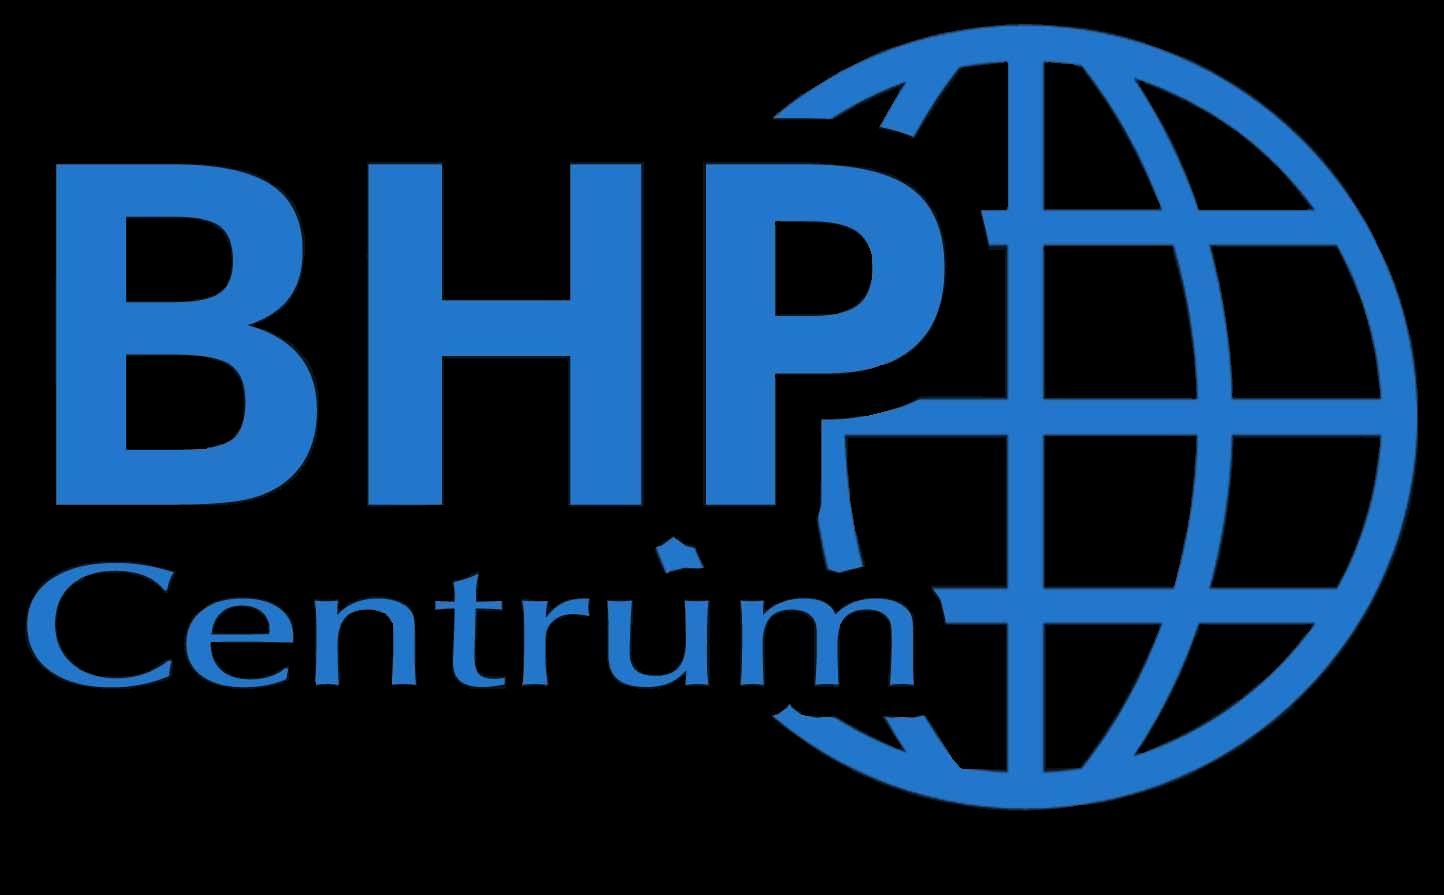 BHP Centrum 780-555-555